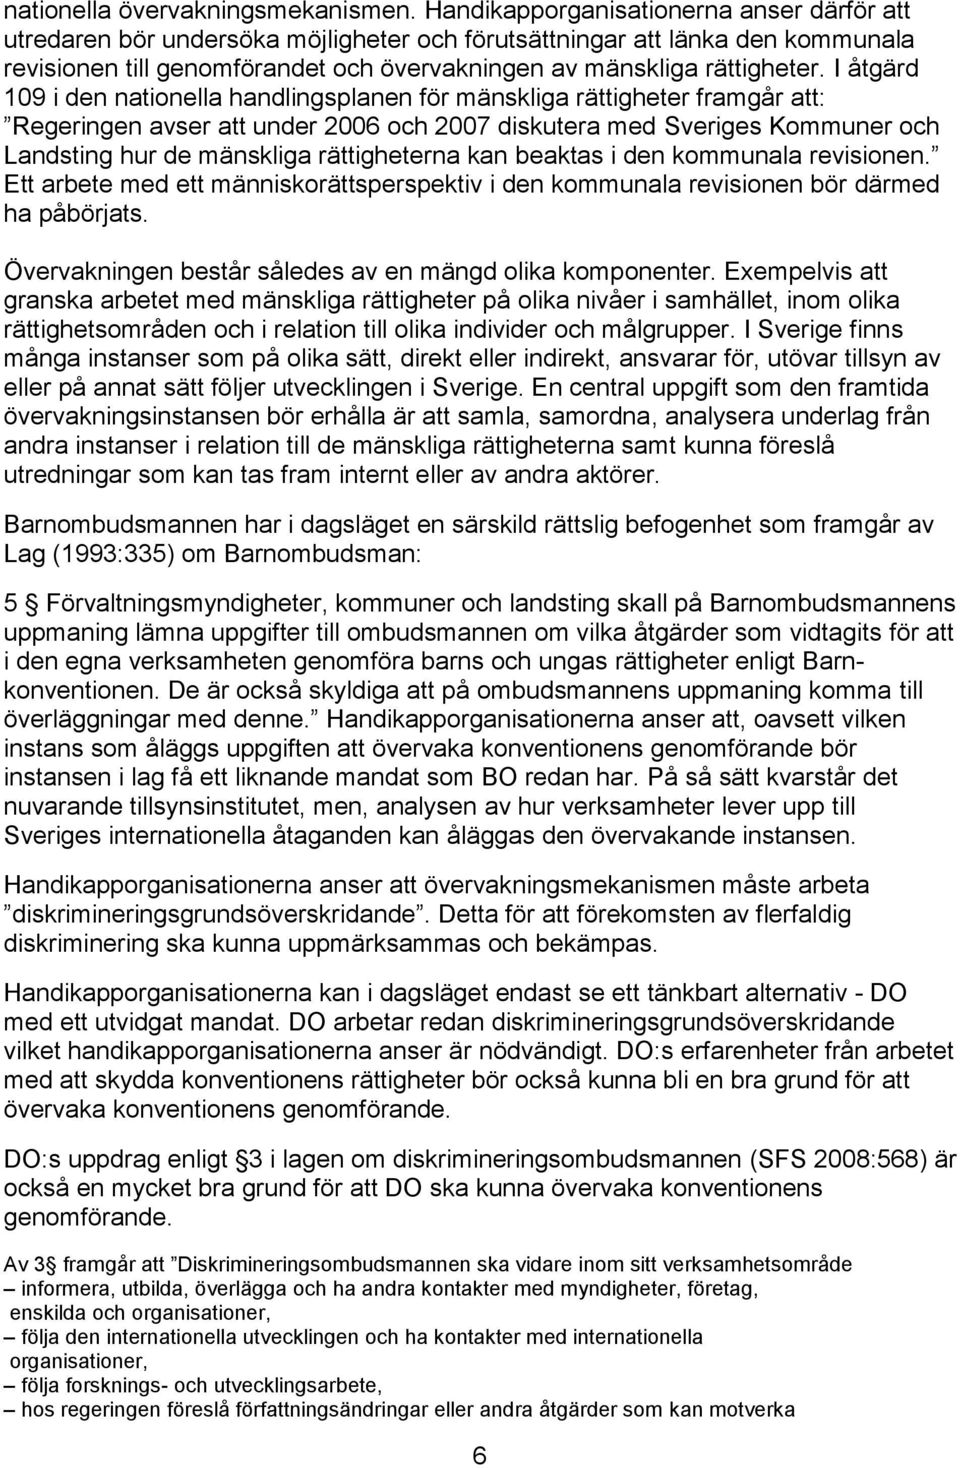 I åtgärd 109 i den nationella handlingsplanen för mänskliga rättigheter framgår att: Regeringen avser att under 2006 och 2007 diskutera med Sveriges Kommuner och Landsting hur de mänskliga